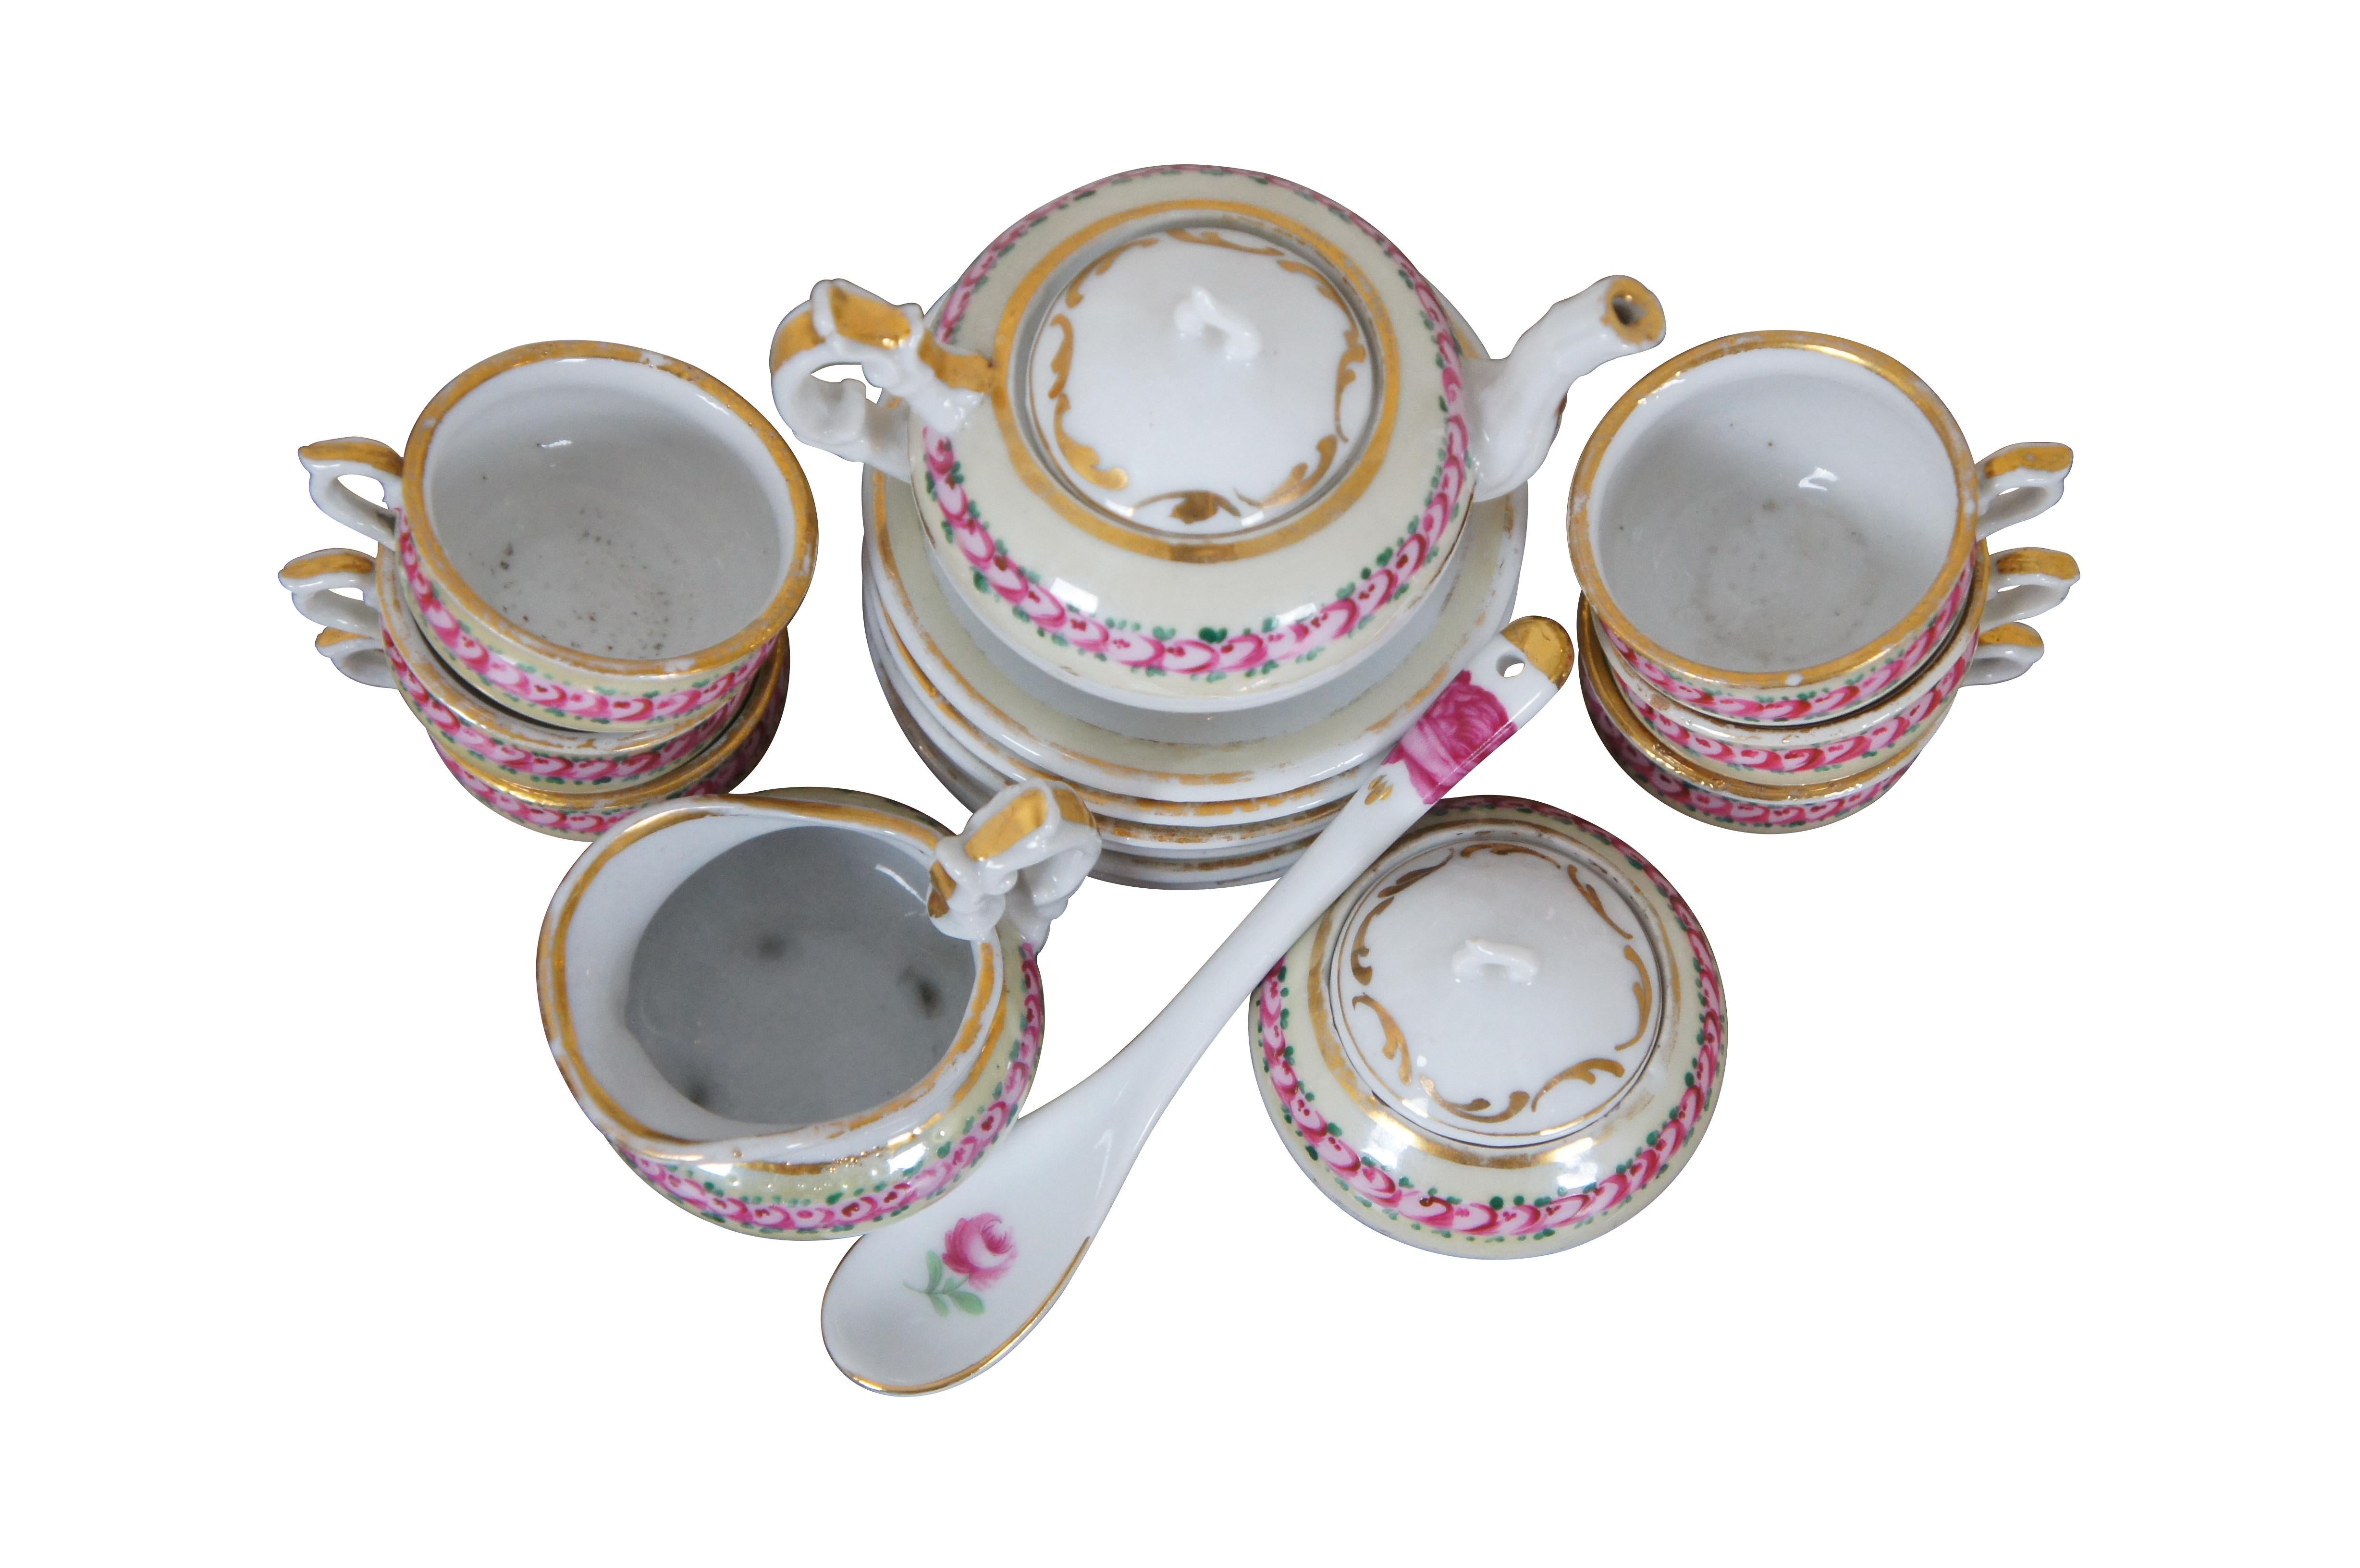 Service à thé miniature en porcelaine pour enfant, 18 pièces, peint à la main avec des roses roses sur une bordure crème avec des accents dorés. L'ensemble comprend 6 tasses à thé, 6 soucoupes, une théière avec couvercle, un sucrier avec couvercle,